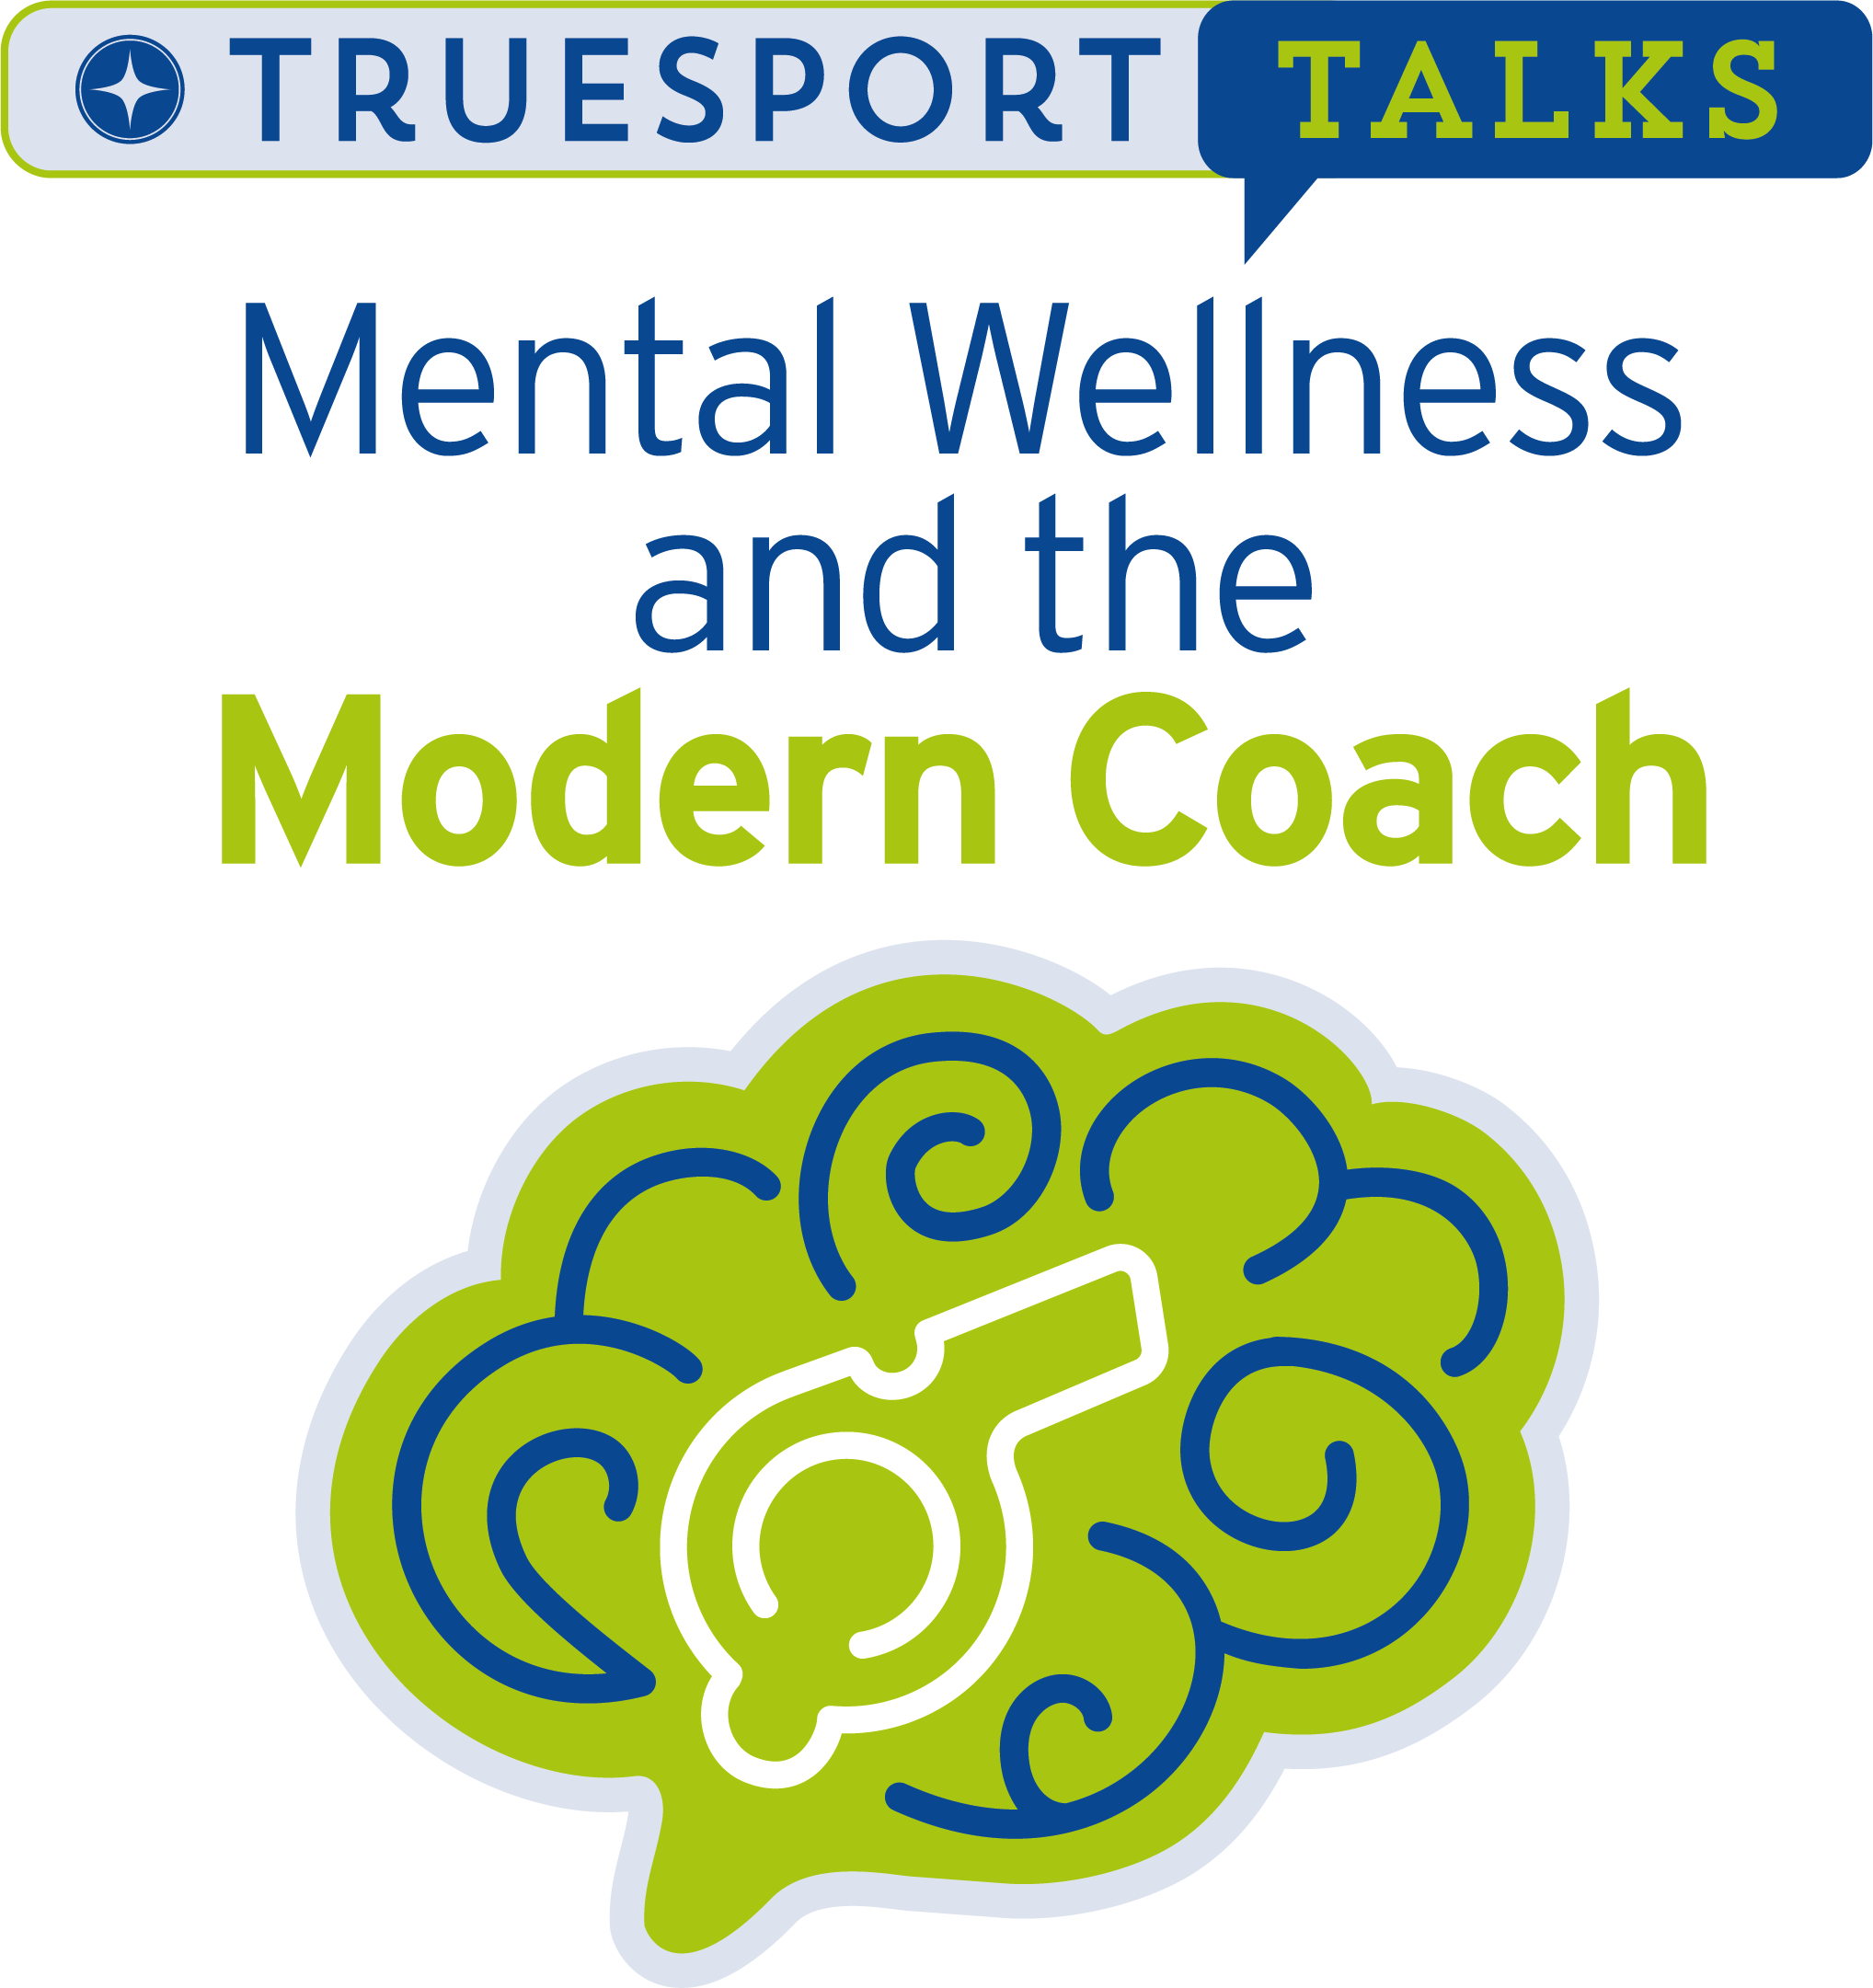 TrueSport Talks: Mental Wellness and the Modern Coach.